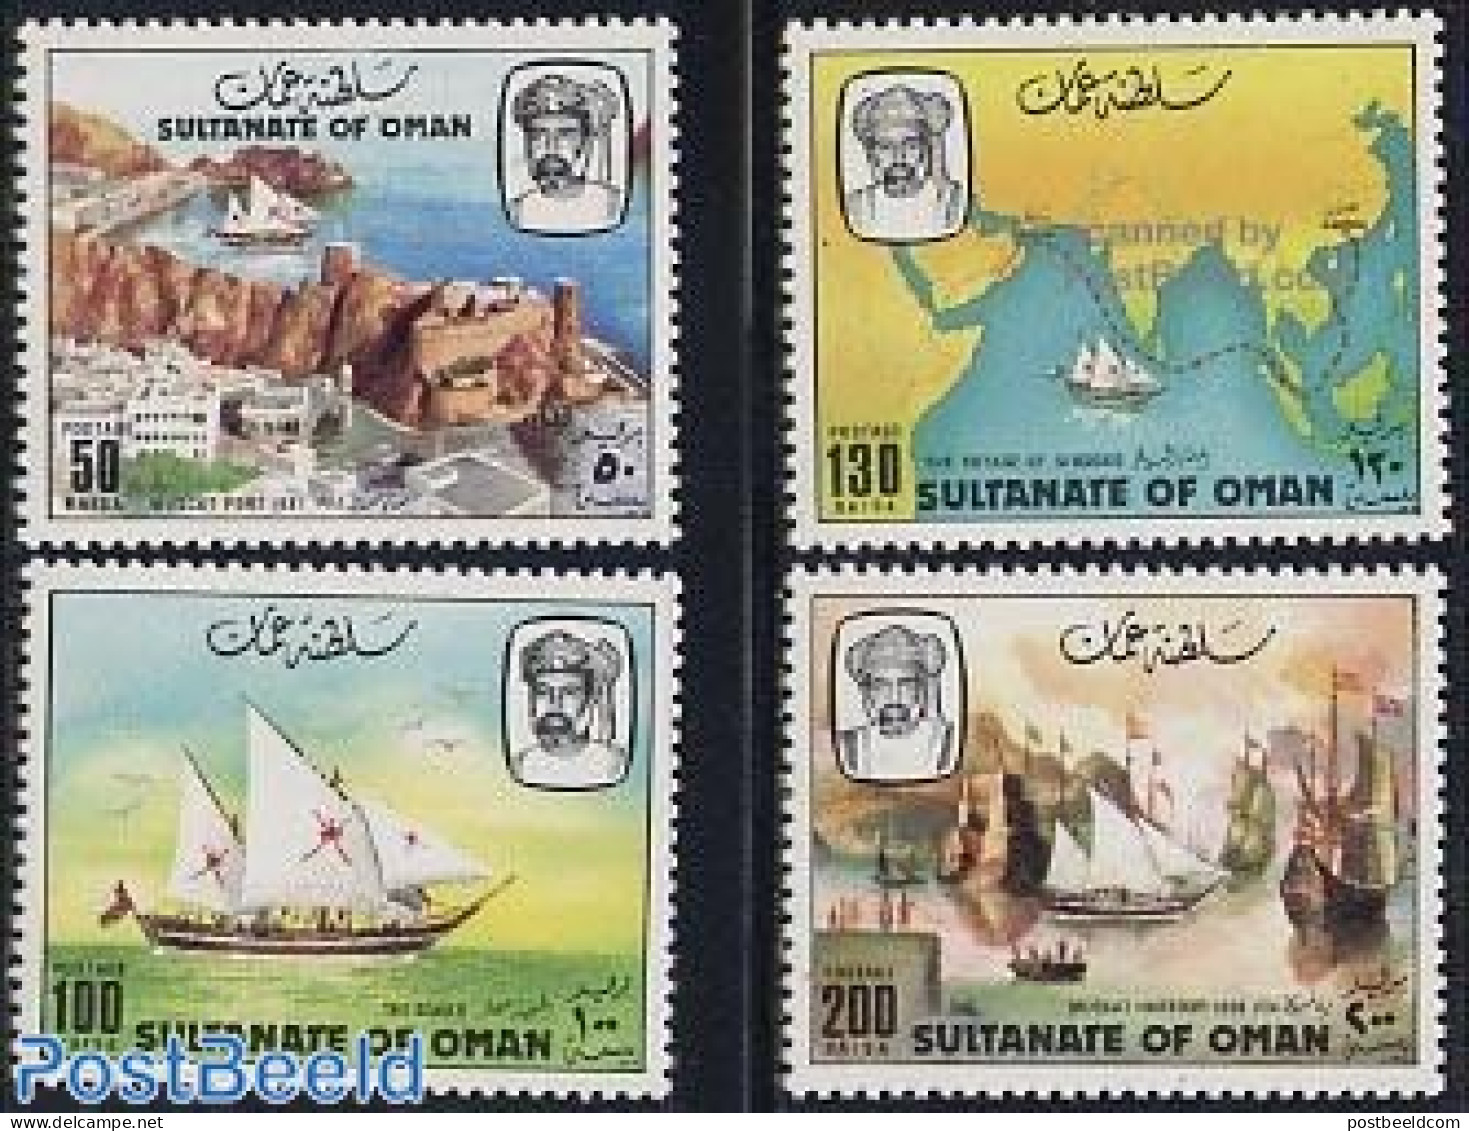 Oman 1981 Sindbad 4v, Mint NH, Transport - Various - Ships And Boats - Maps - Ships